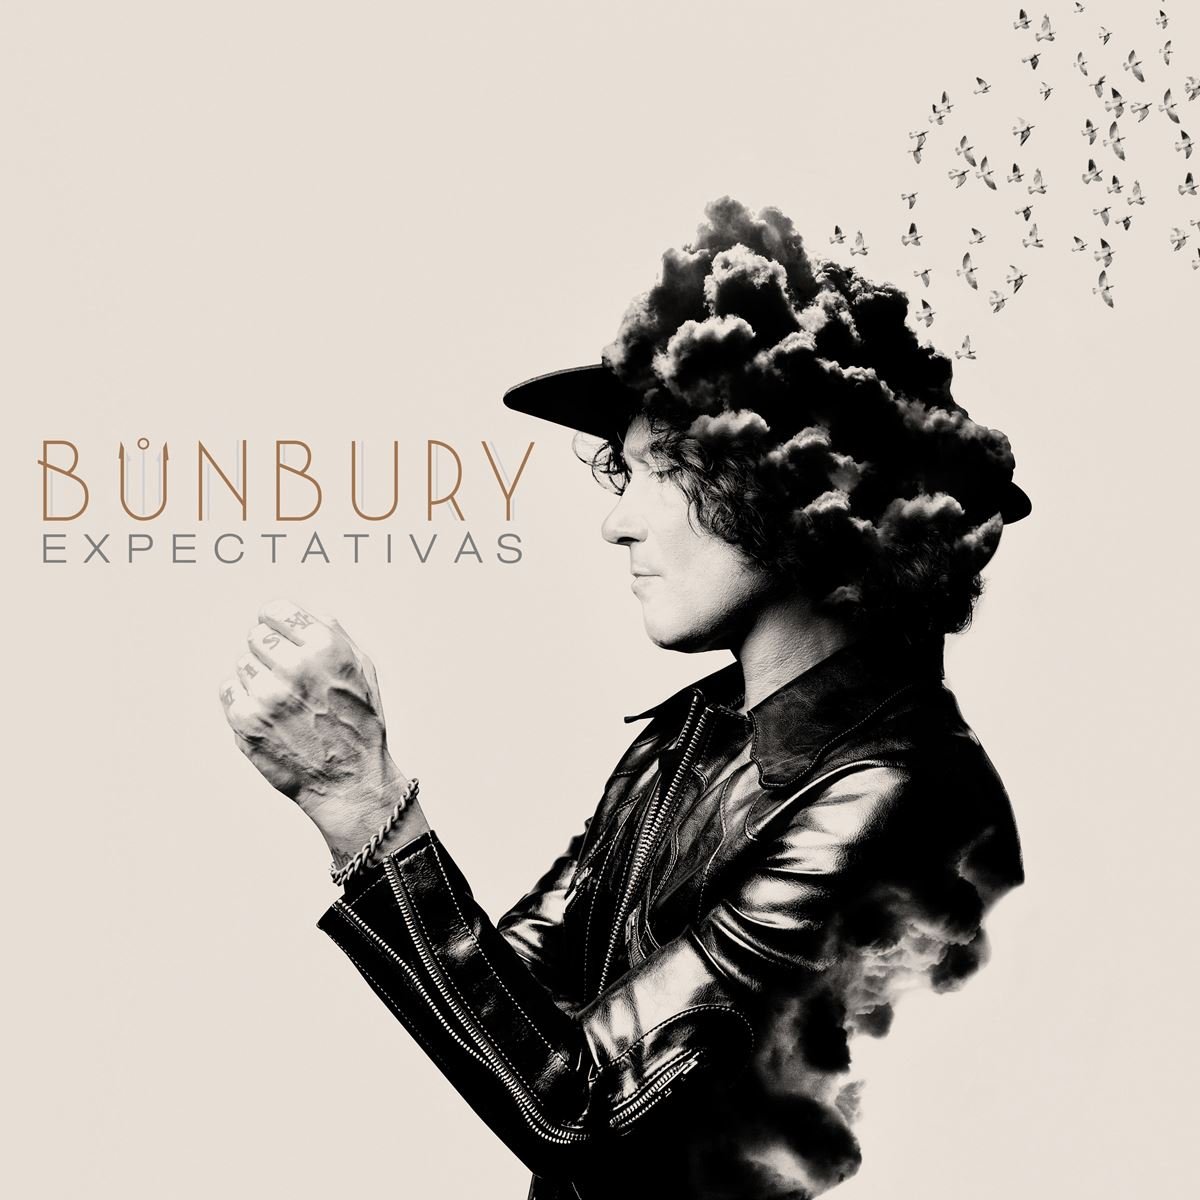 CD/ LP Bunbury- Expectativas